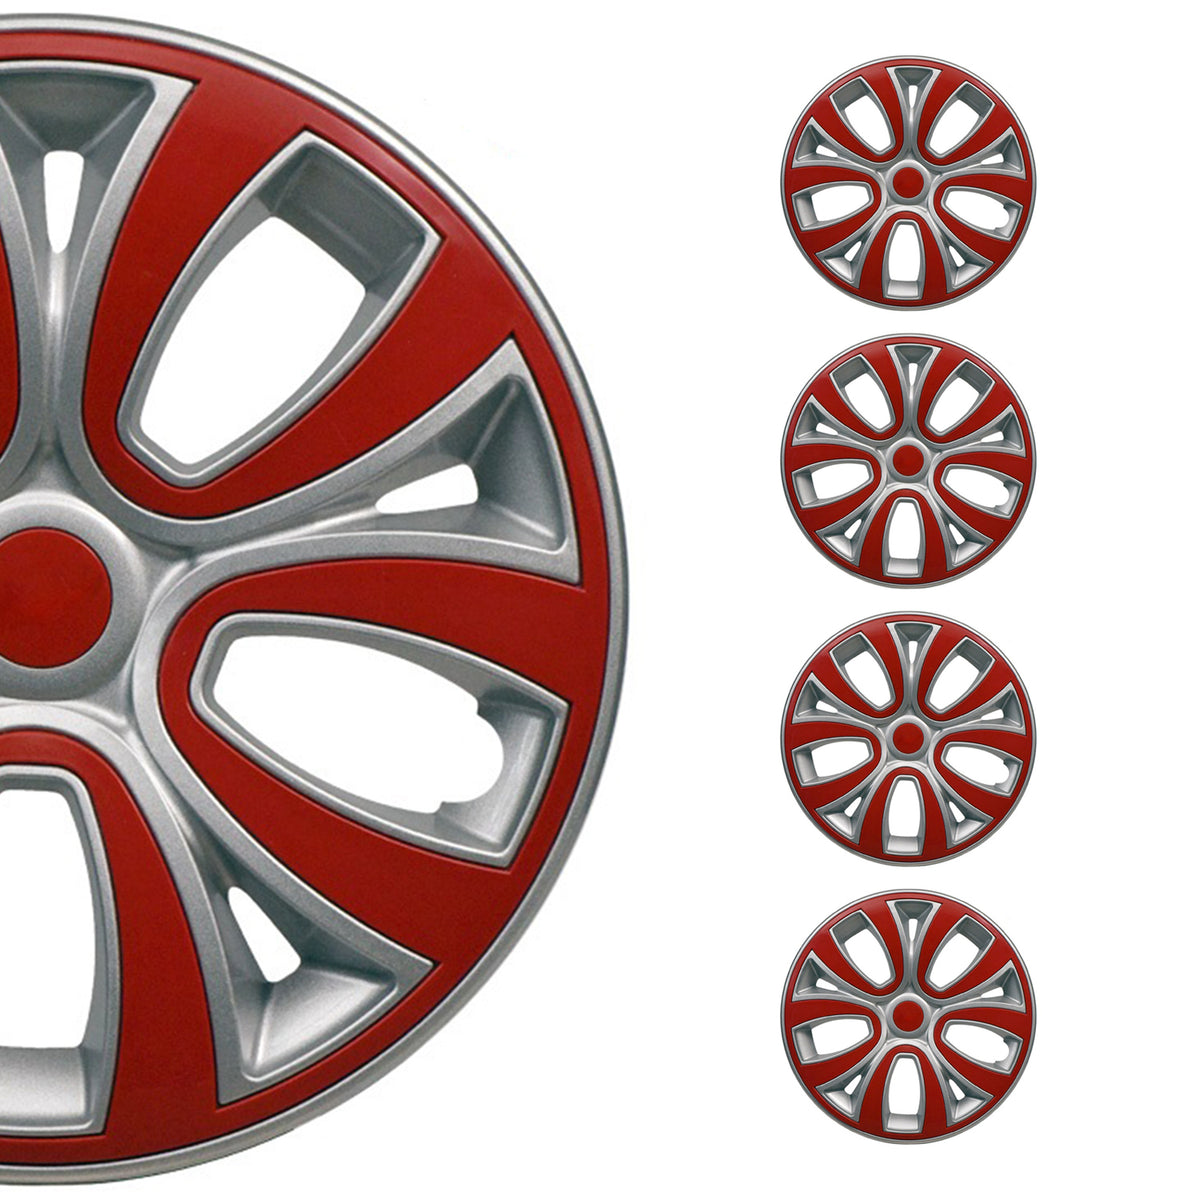 4x Radblenden Radkappen Radzierblenden für 15" Zoll Stahlfelgen Silber Rot